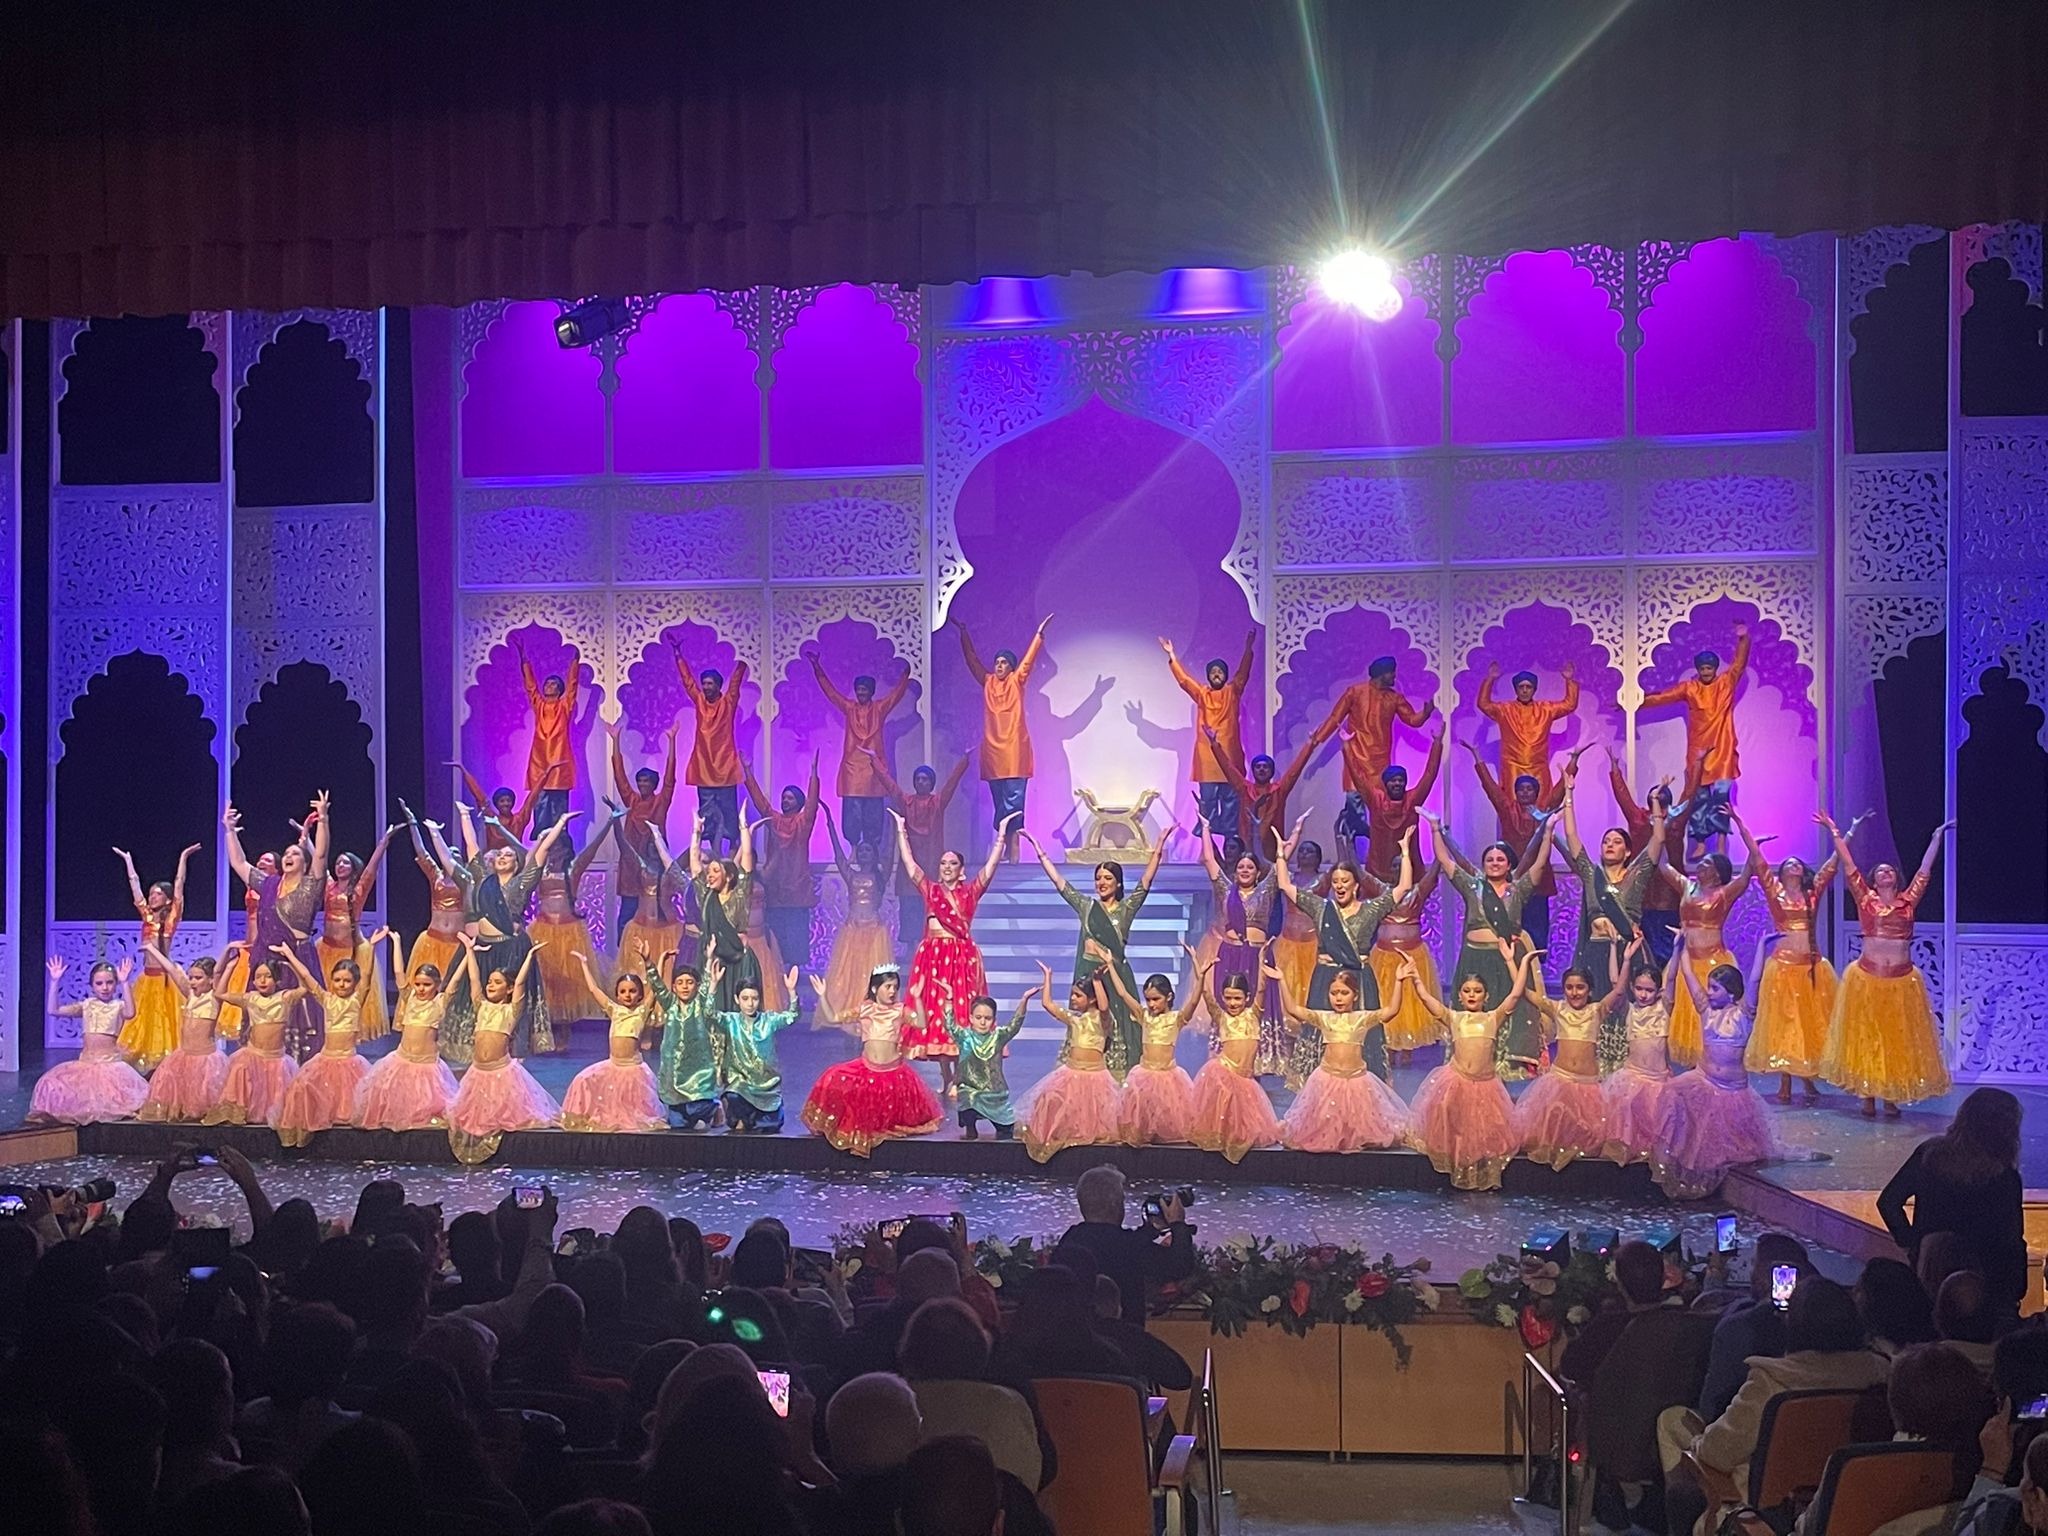 Espectacular SHOW en Isla Cristina protagonizado por las Reinas del Carnaval y sus Cortes de Honor dedicado a BOLLYWOOD